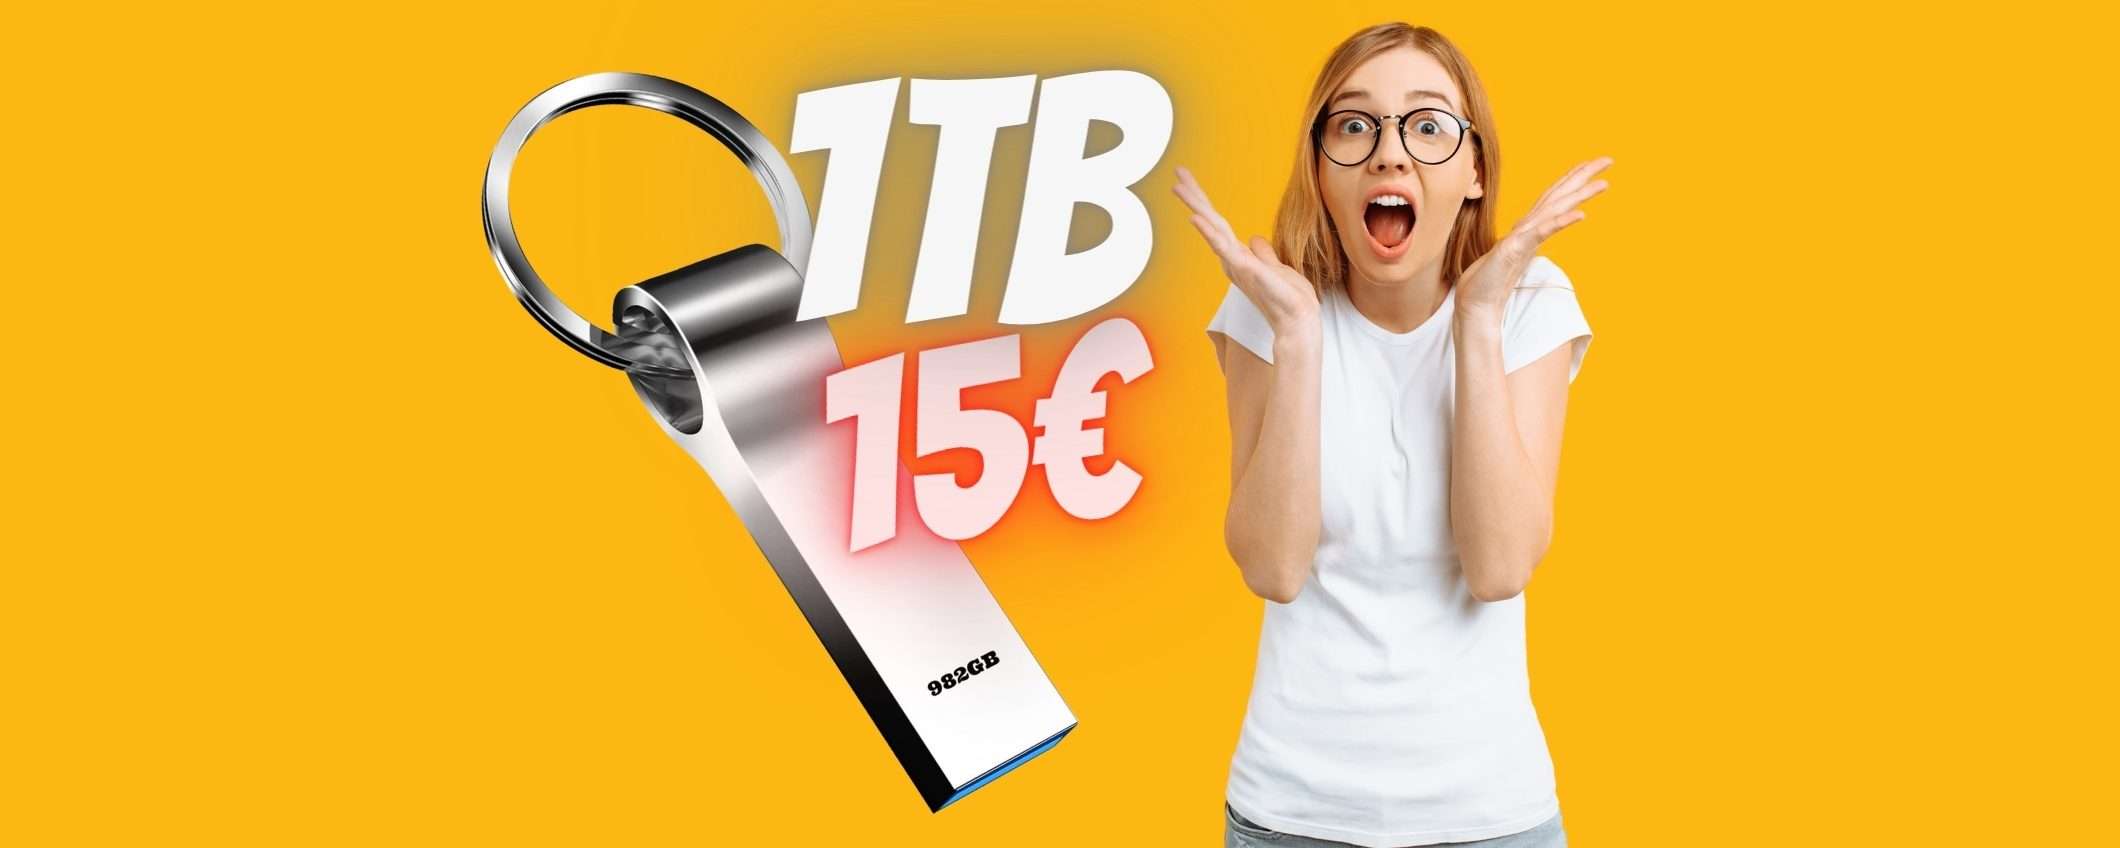 Chiavetta USB da 1TB a soli 15€: Amazon fa IMPAZZIRE il Web